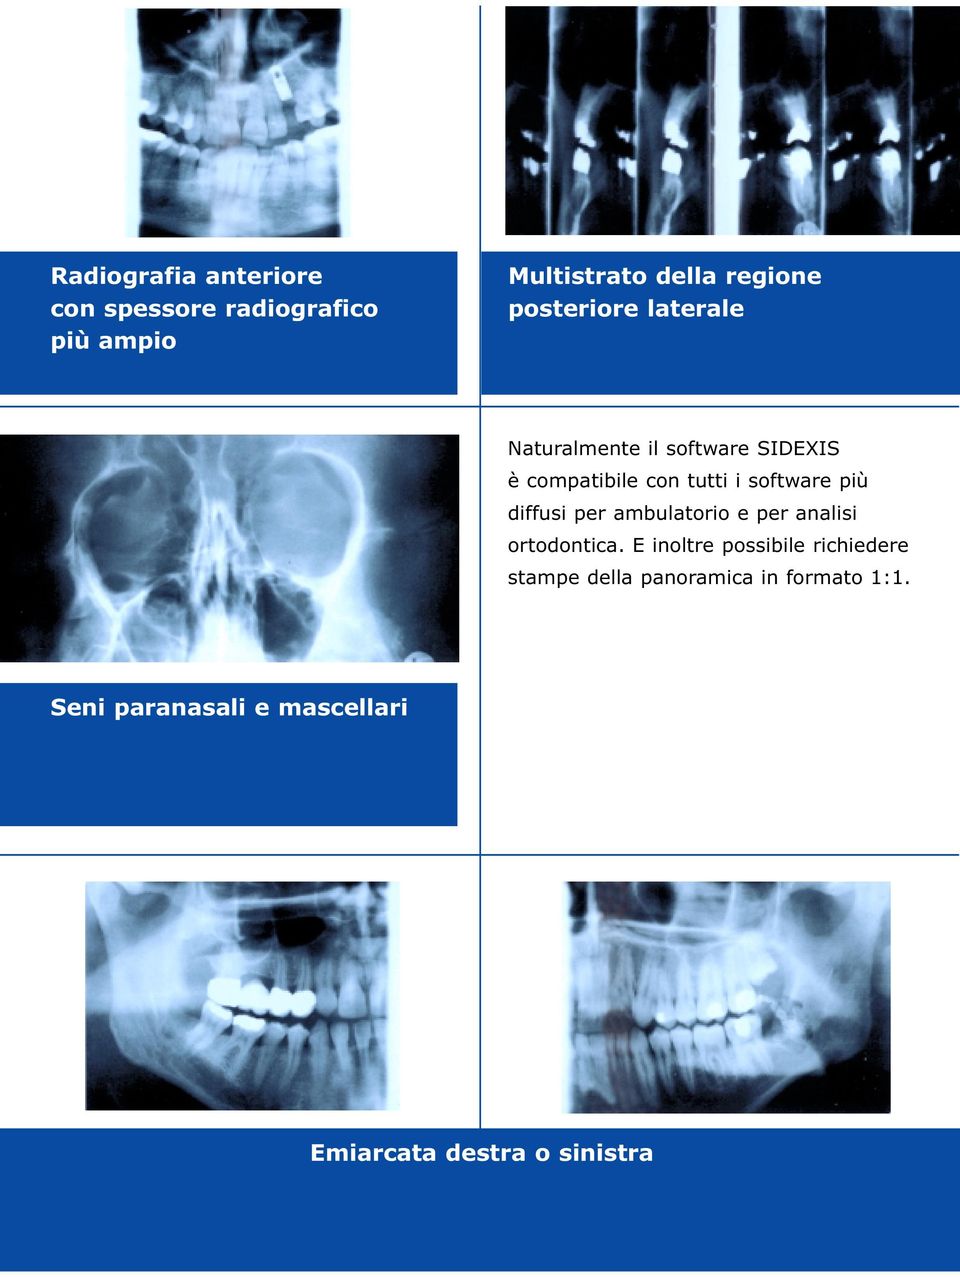 più diffusi per ambulatorio e per analisi ortodontica.